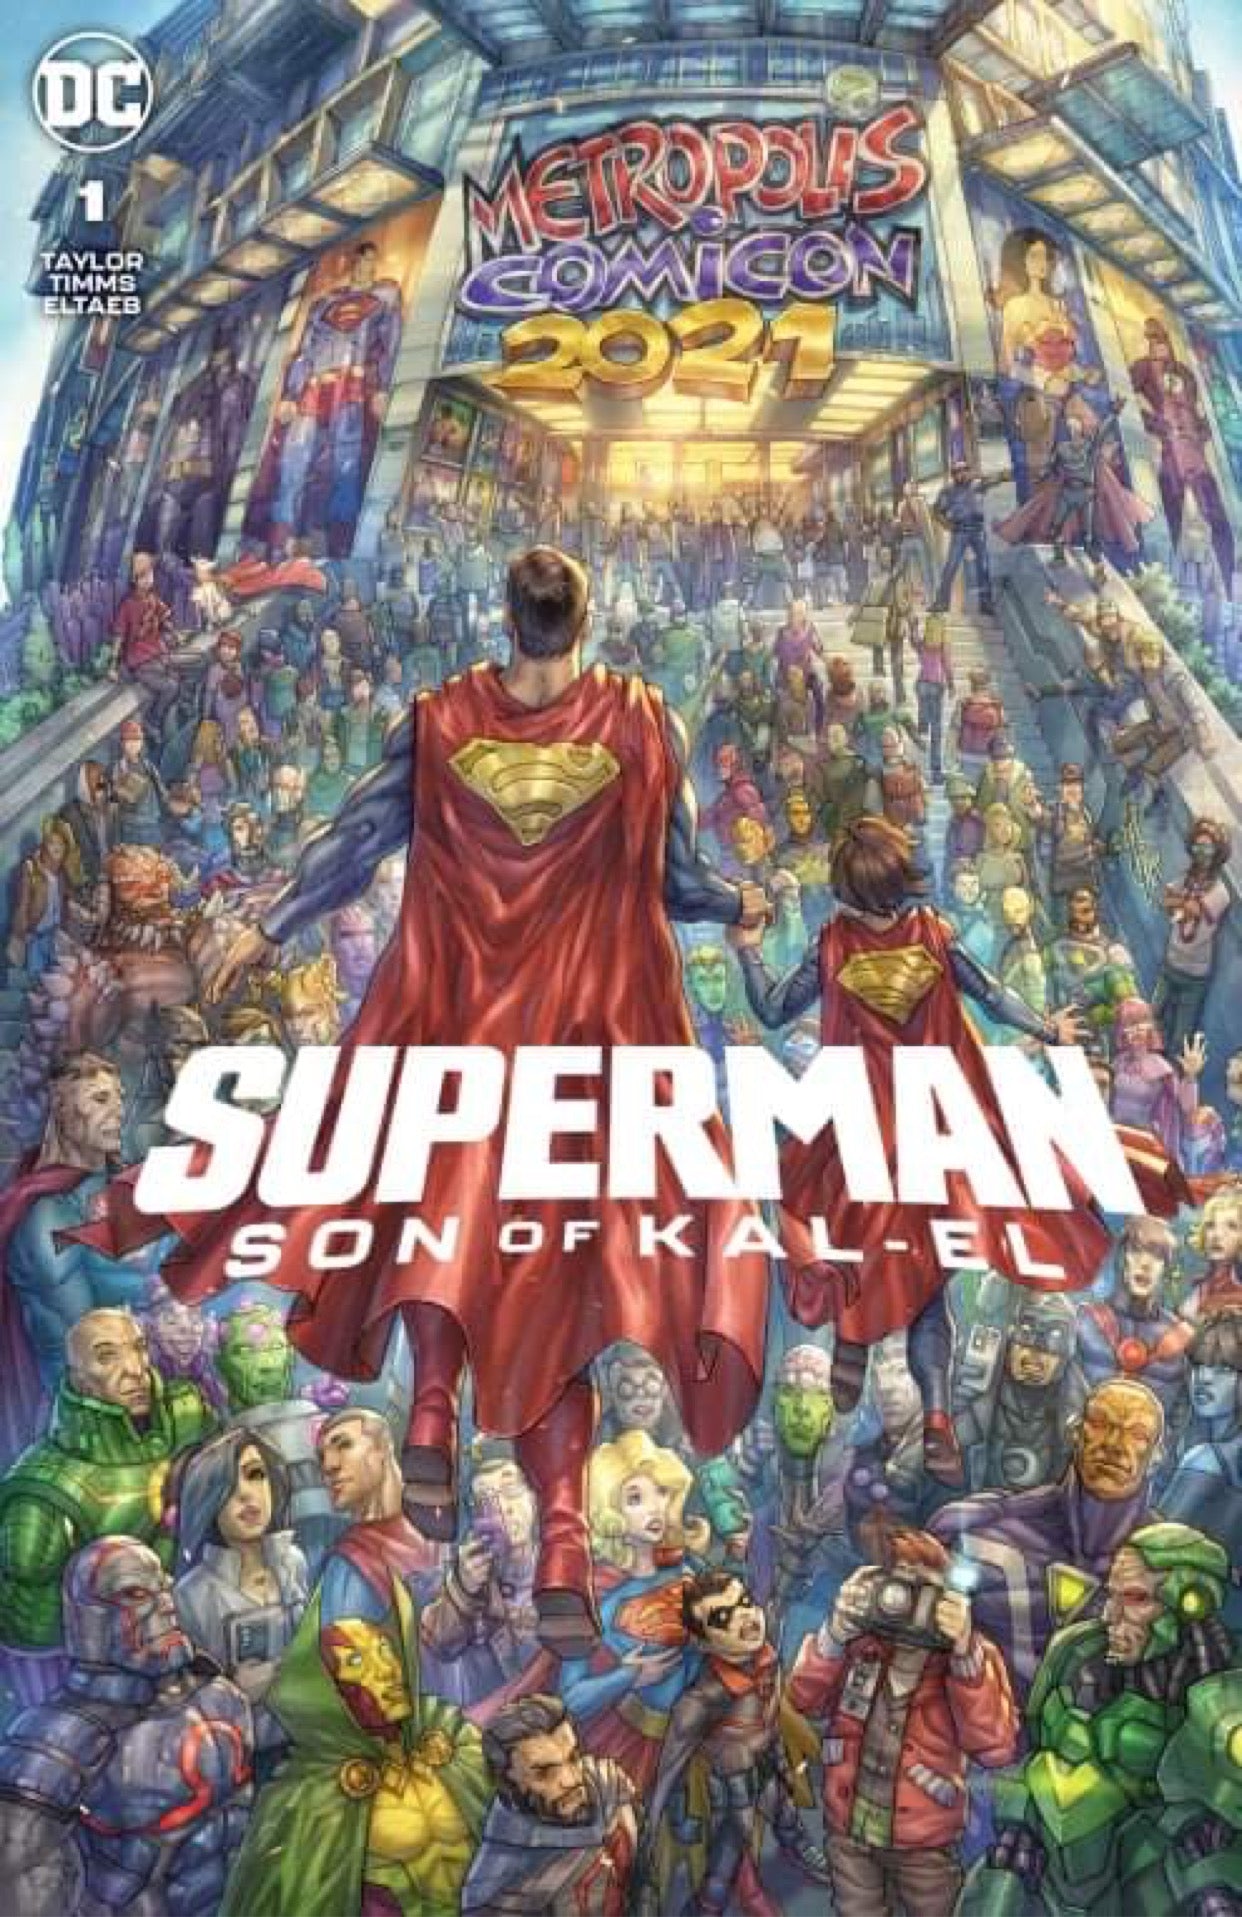 SUPERMAN SON OF KAL-EL #1 ALAN QUAH Exclusive Trade Dress Variant LTD 3000